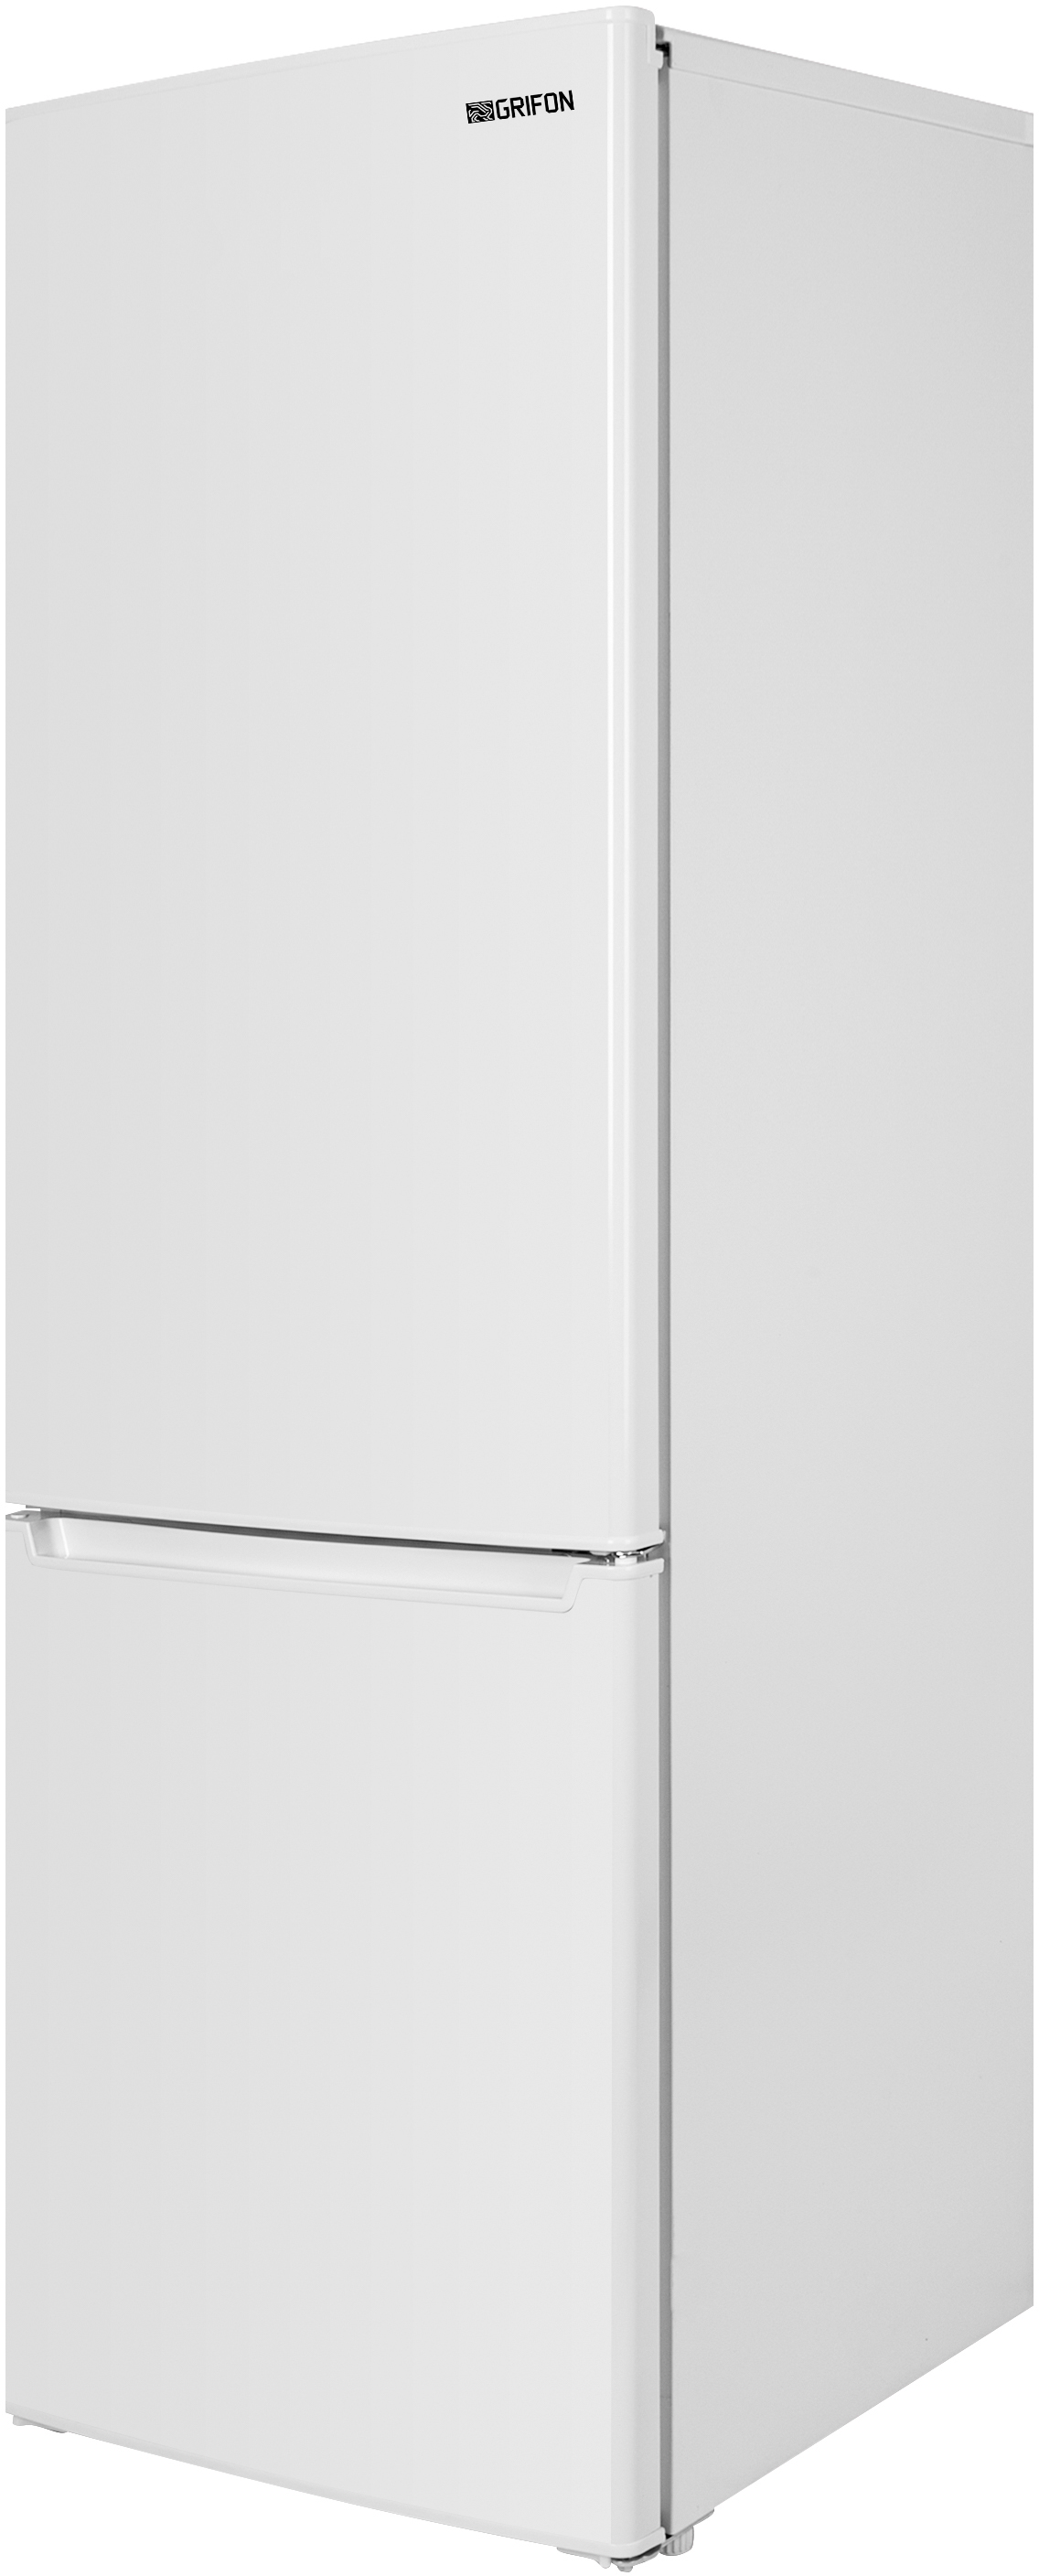 в продаже Холодильник Grifon NFN-180W - фото 3